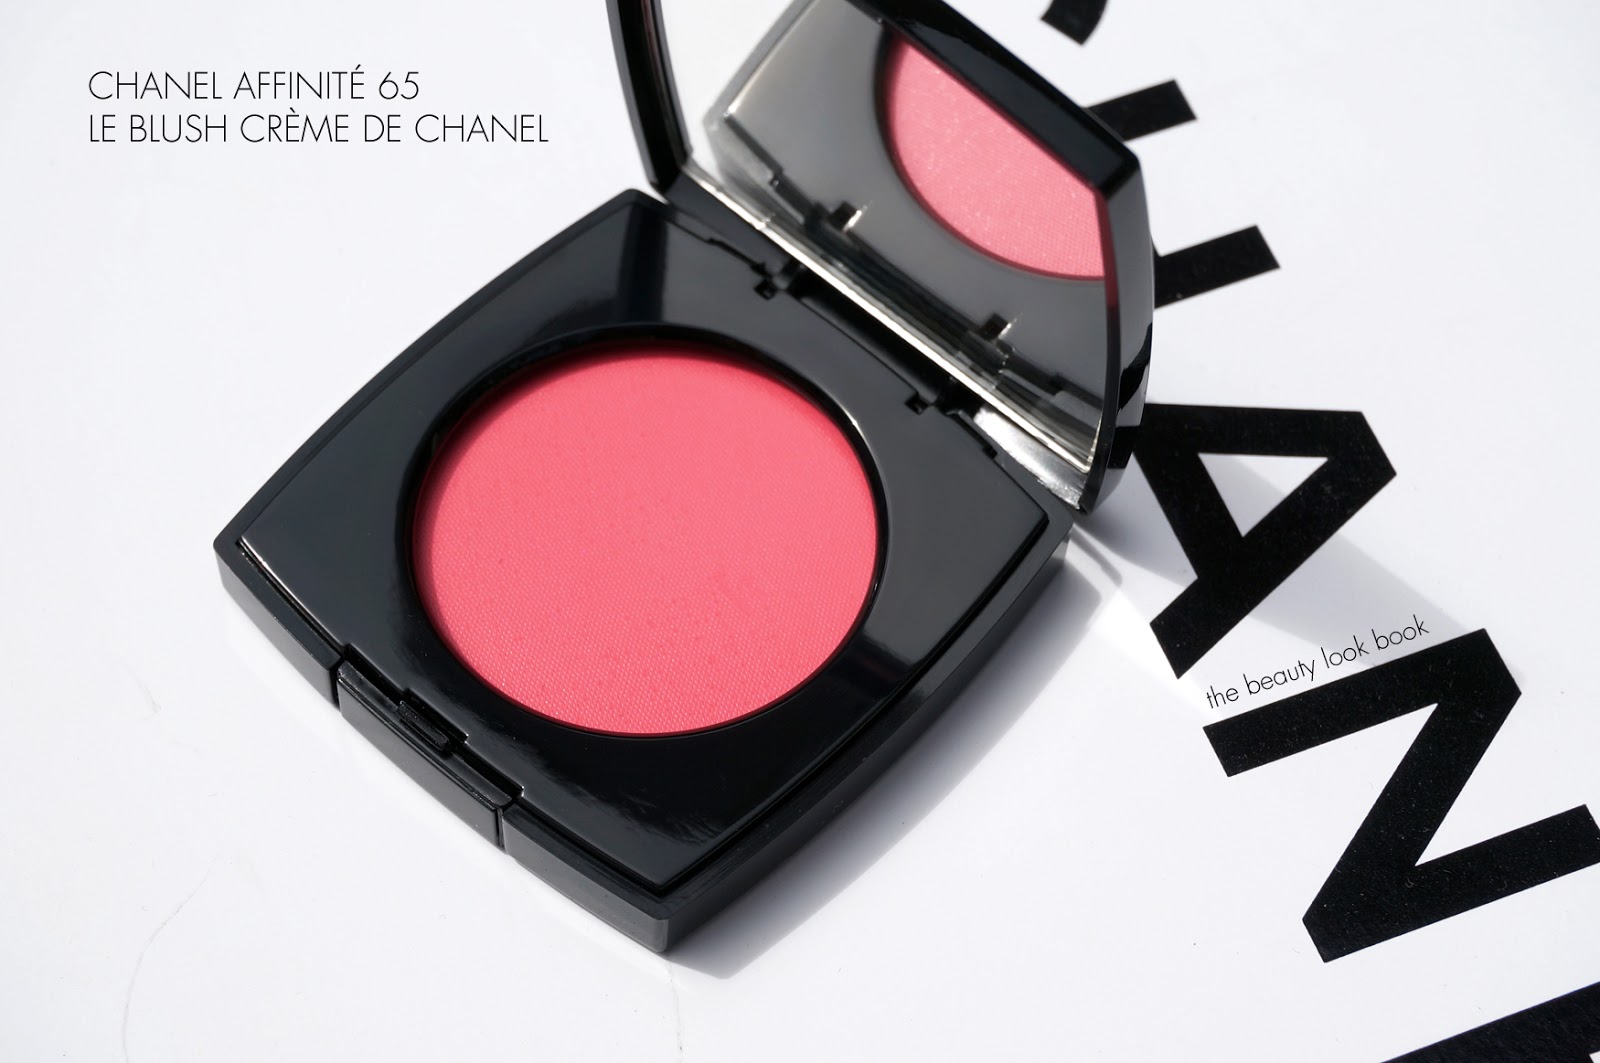 Chanel Affinité 65 Le Blush Crème de Chanel - The Beauty Look Book